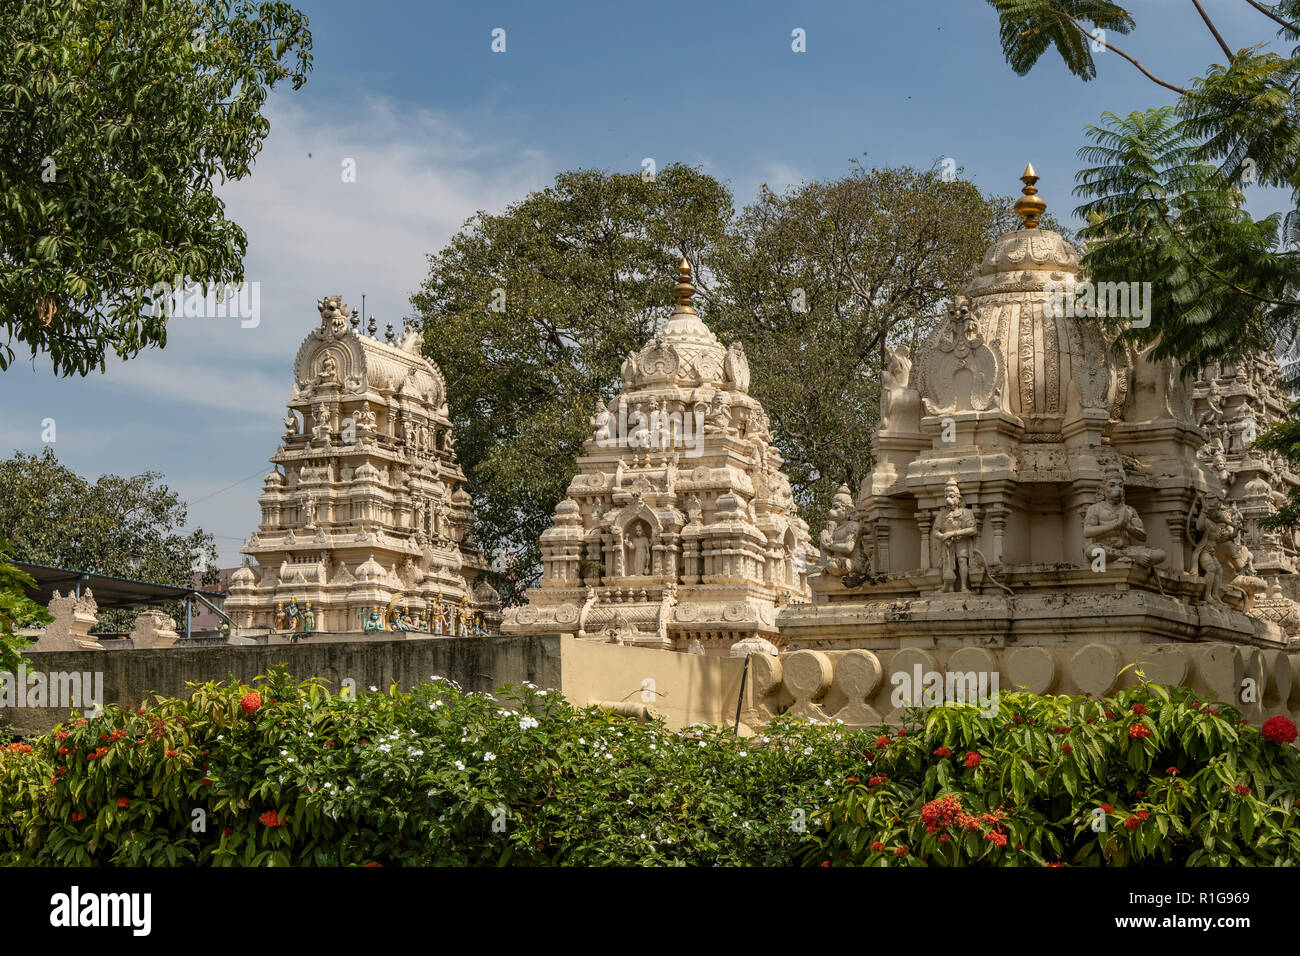 Hindu Temples at Tipu Palace, Bangalore, Karnataka, India Stock Photo